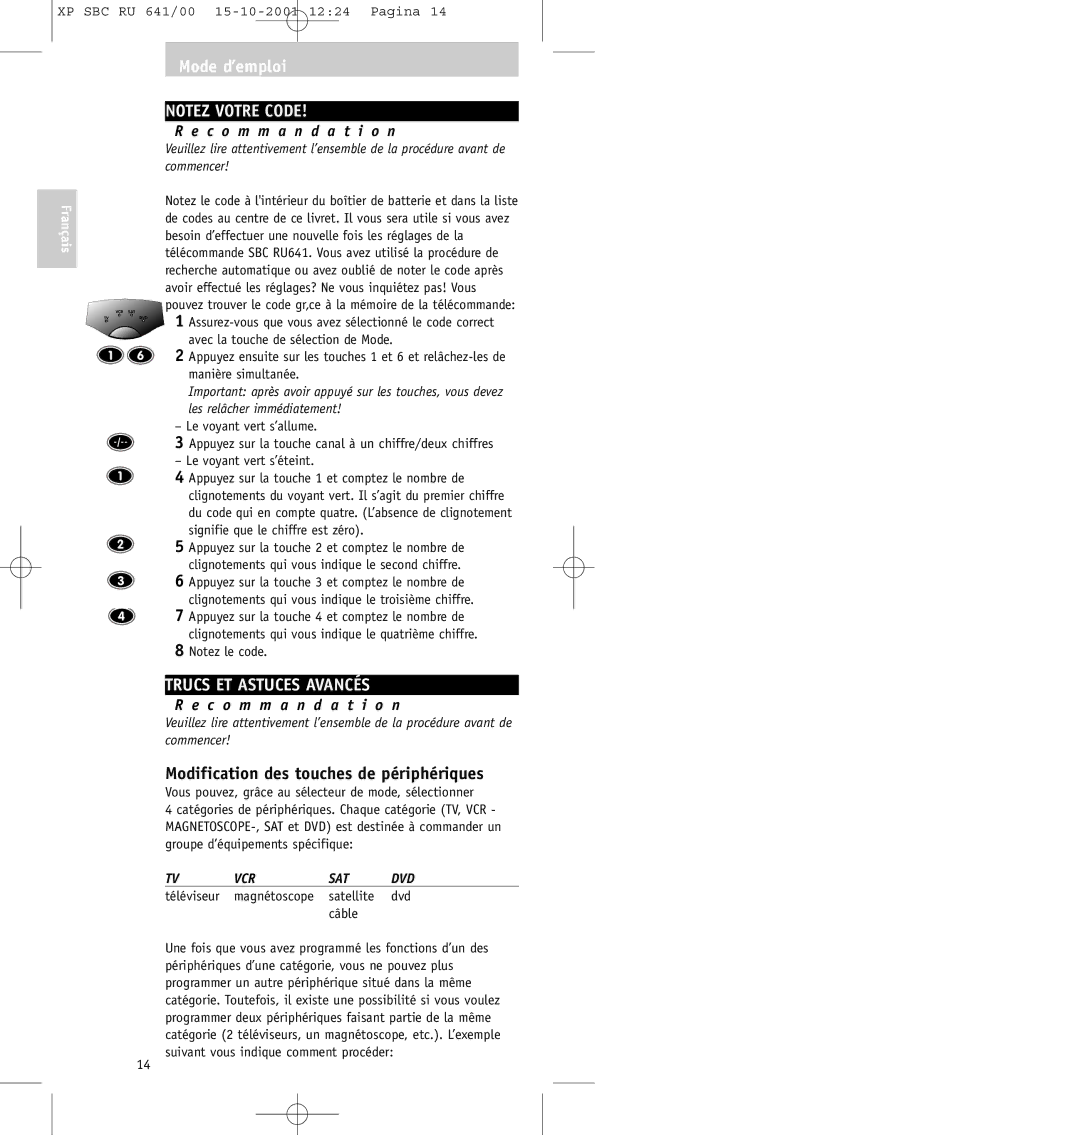 Philips SBC RU641/00 manual Trucs ET Astuces Avancés, Modification des touches de périphériques 